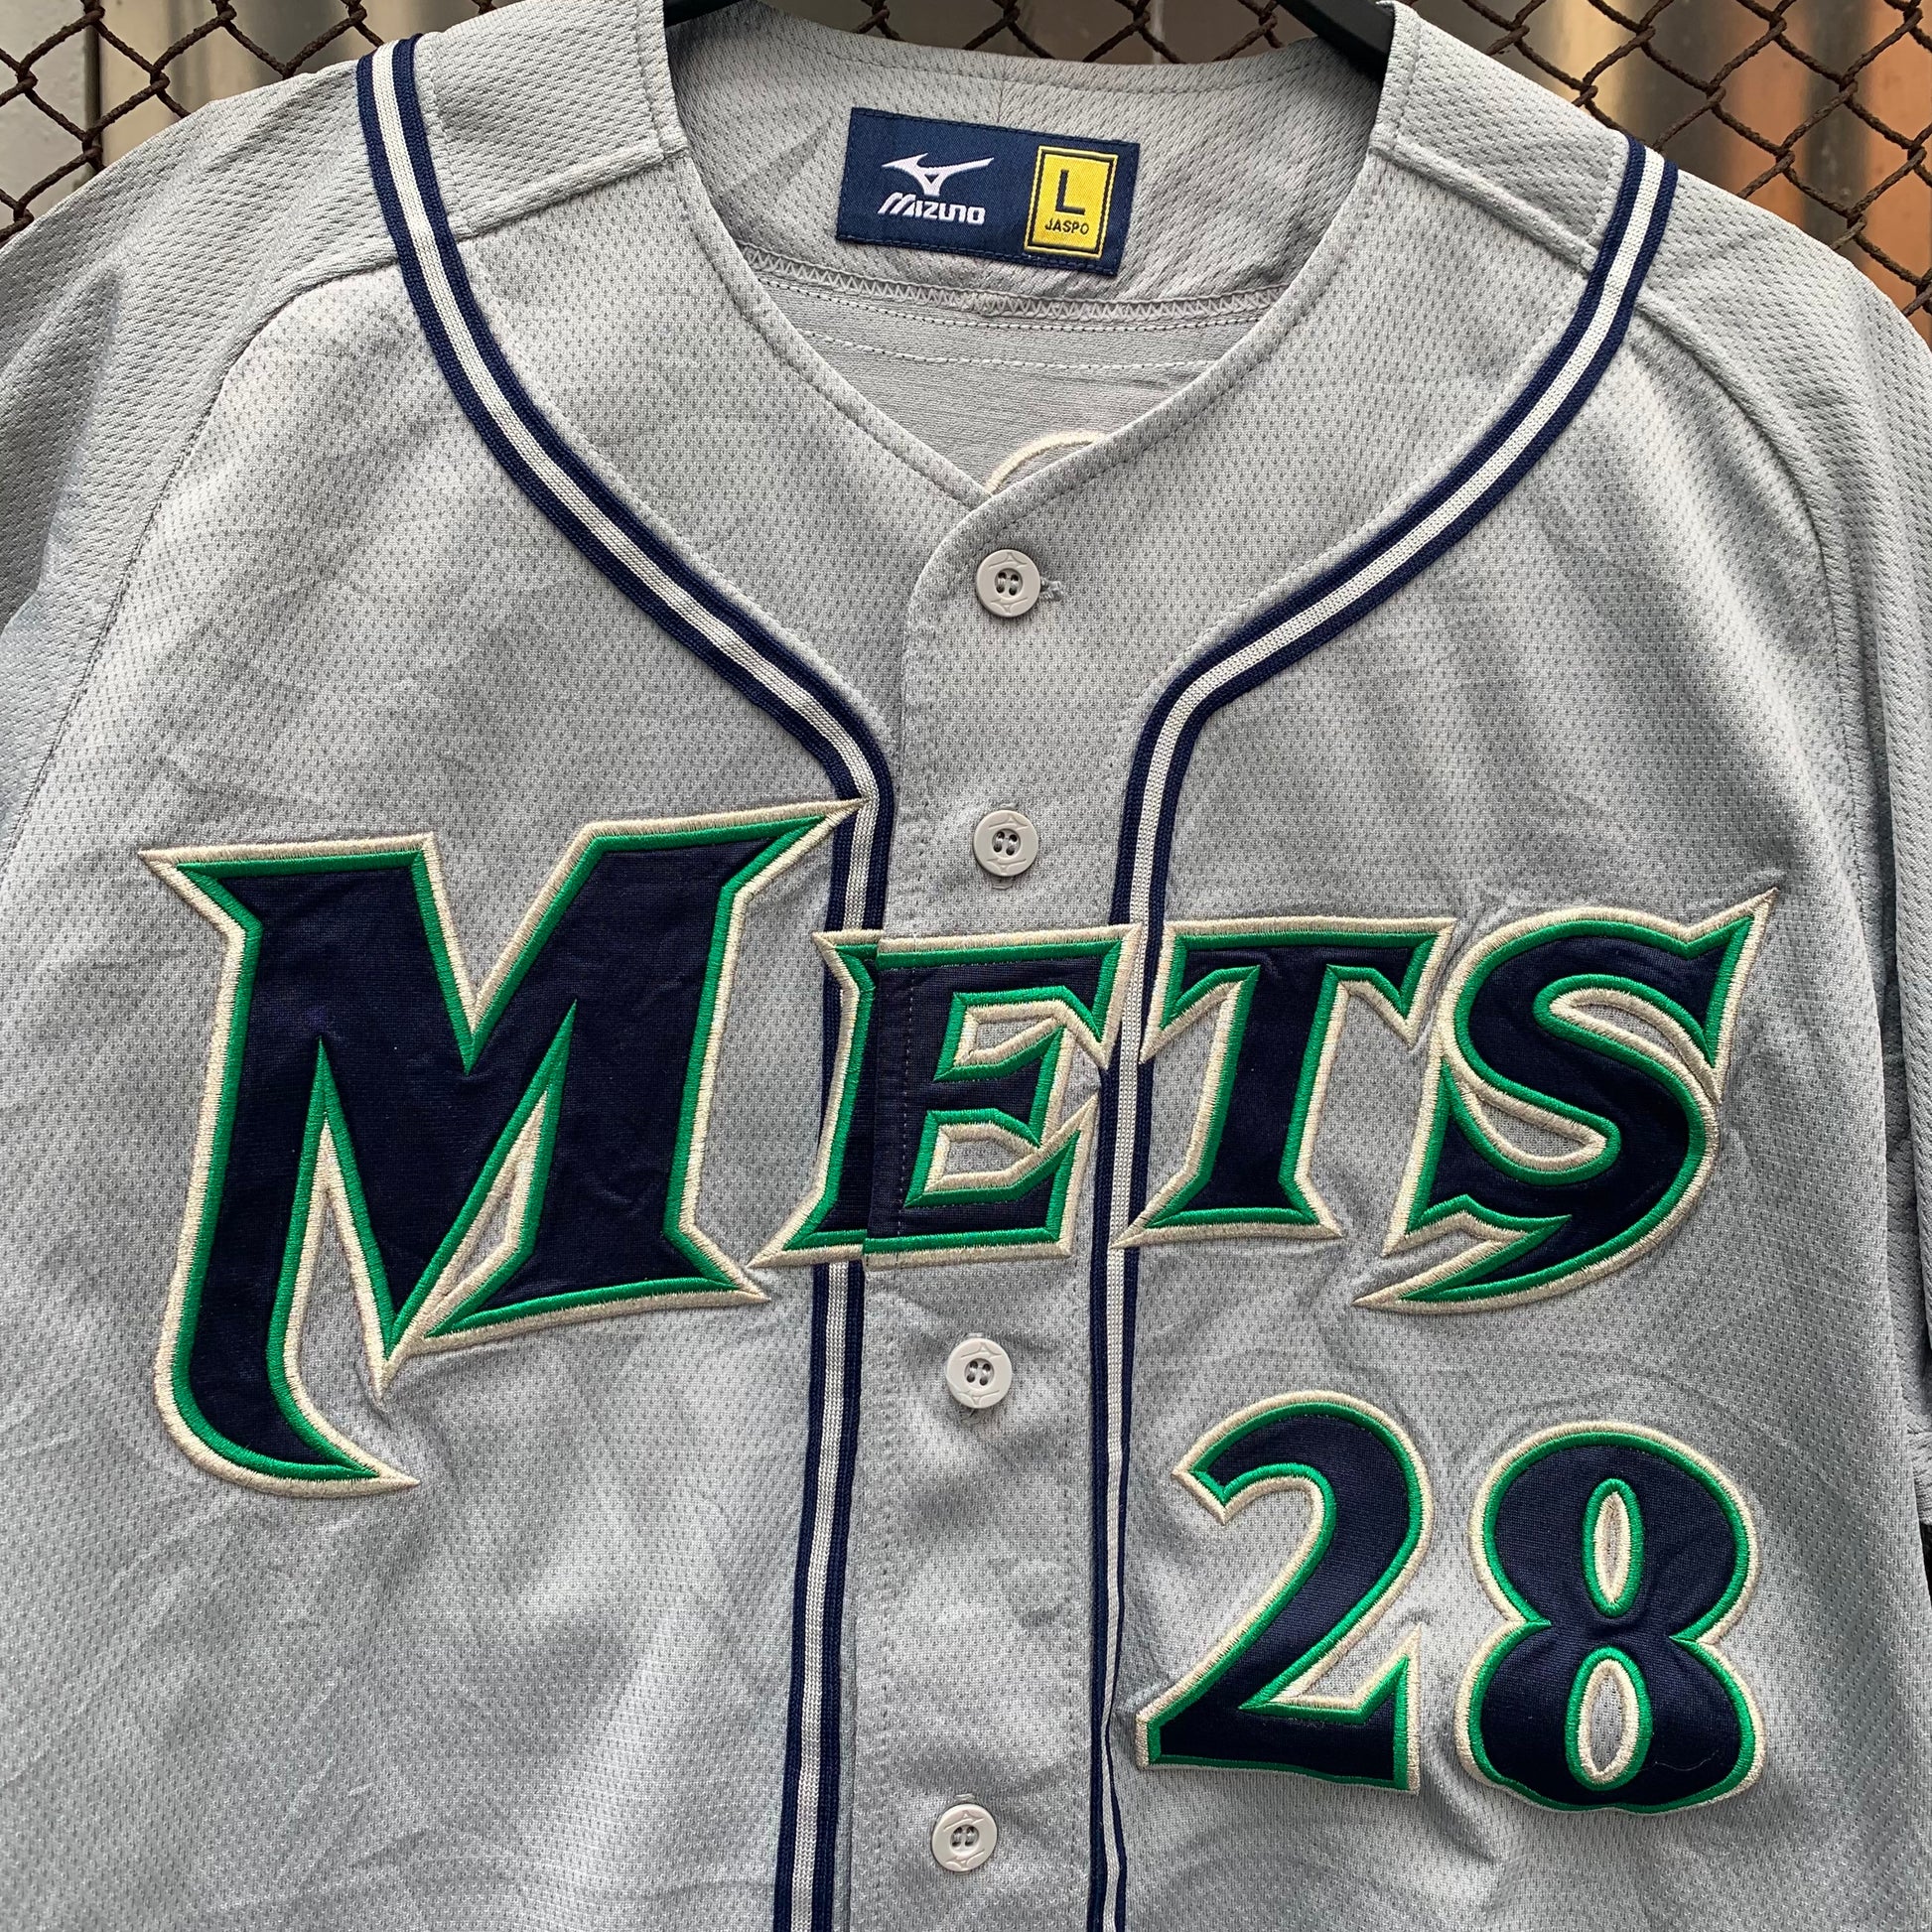 Japanese Baseball Jersey - Koji, 28 – Wasteland